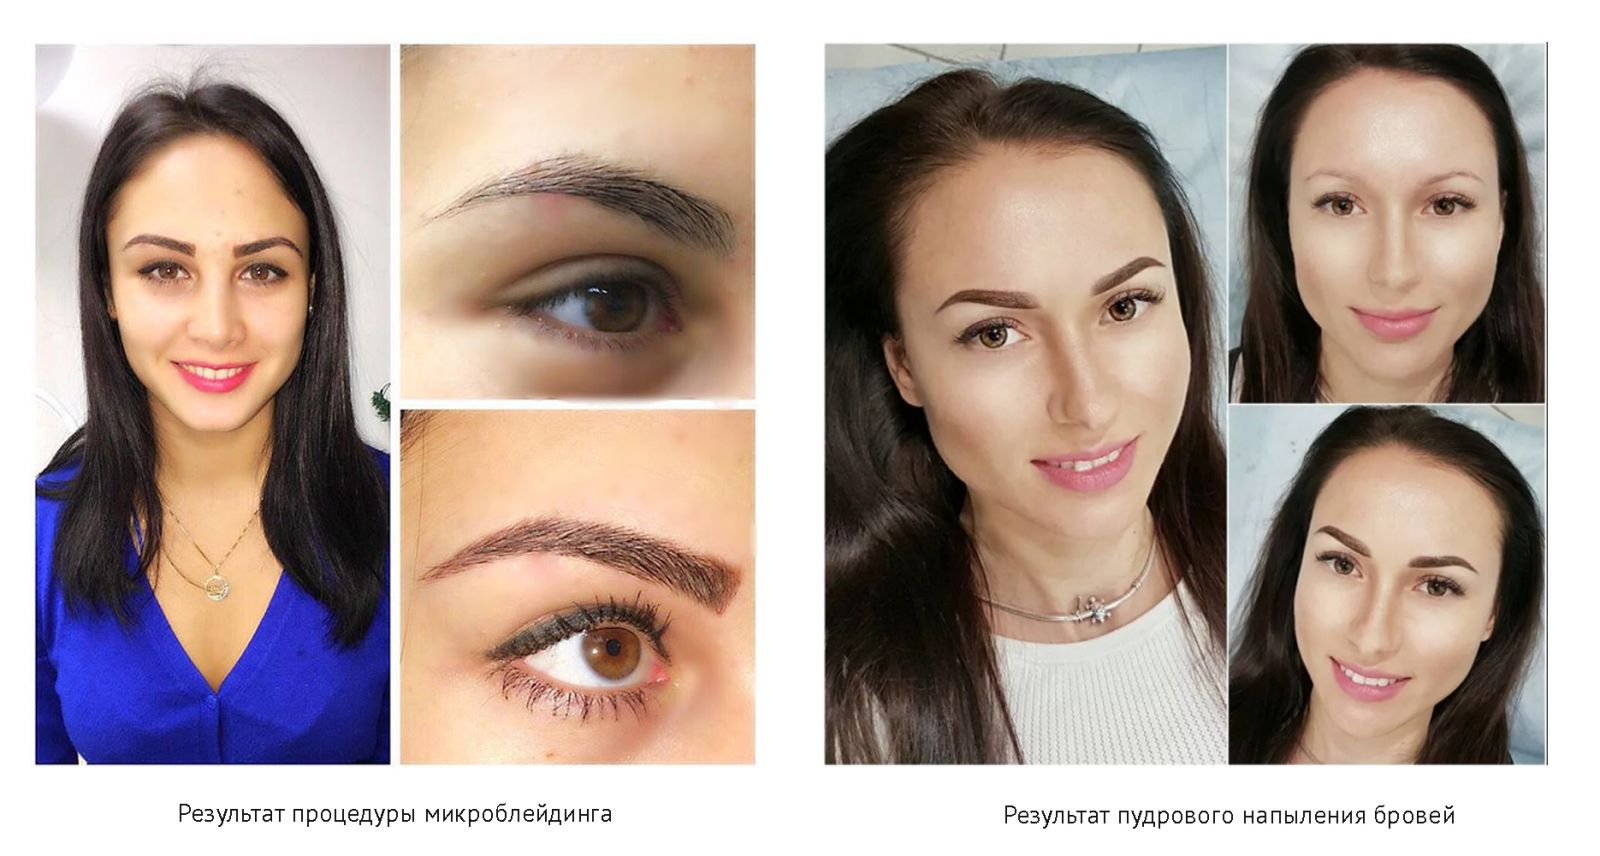 Брови пудровое напыление, современная технология перманентного макияжа. фото до и после - ezavi.ru